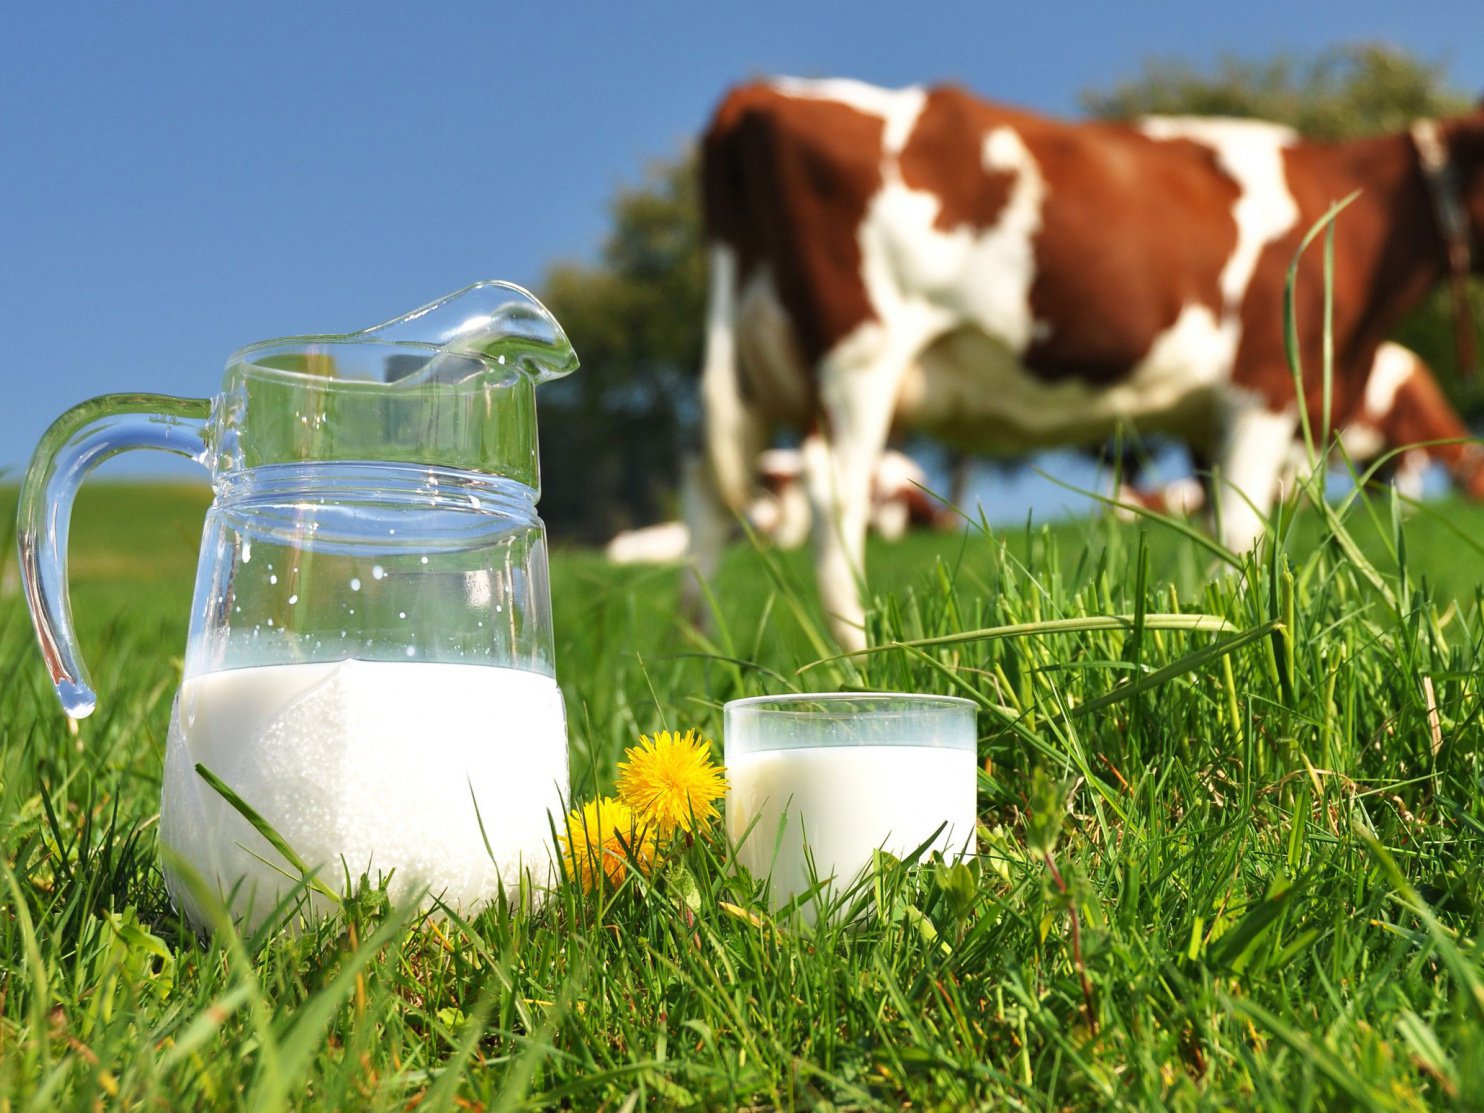 Почему у коровы мало молока: причины снижения надоев, возможные заболевания